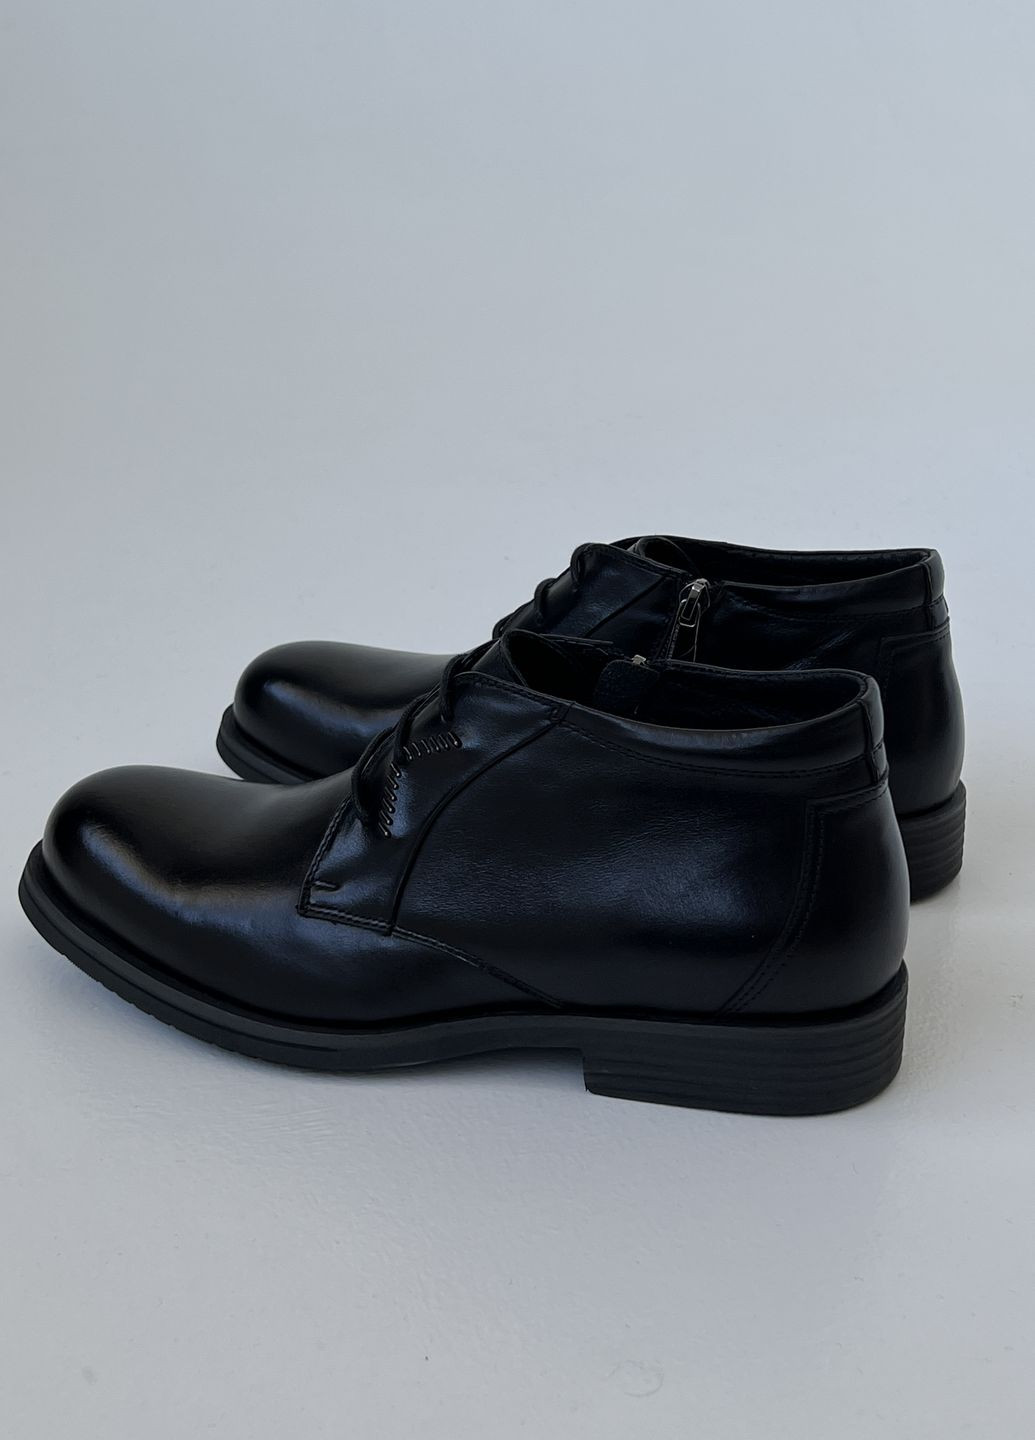 Черные осенние ботинки Respect